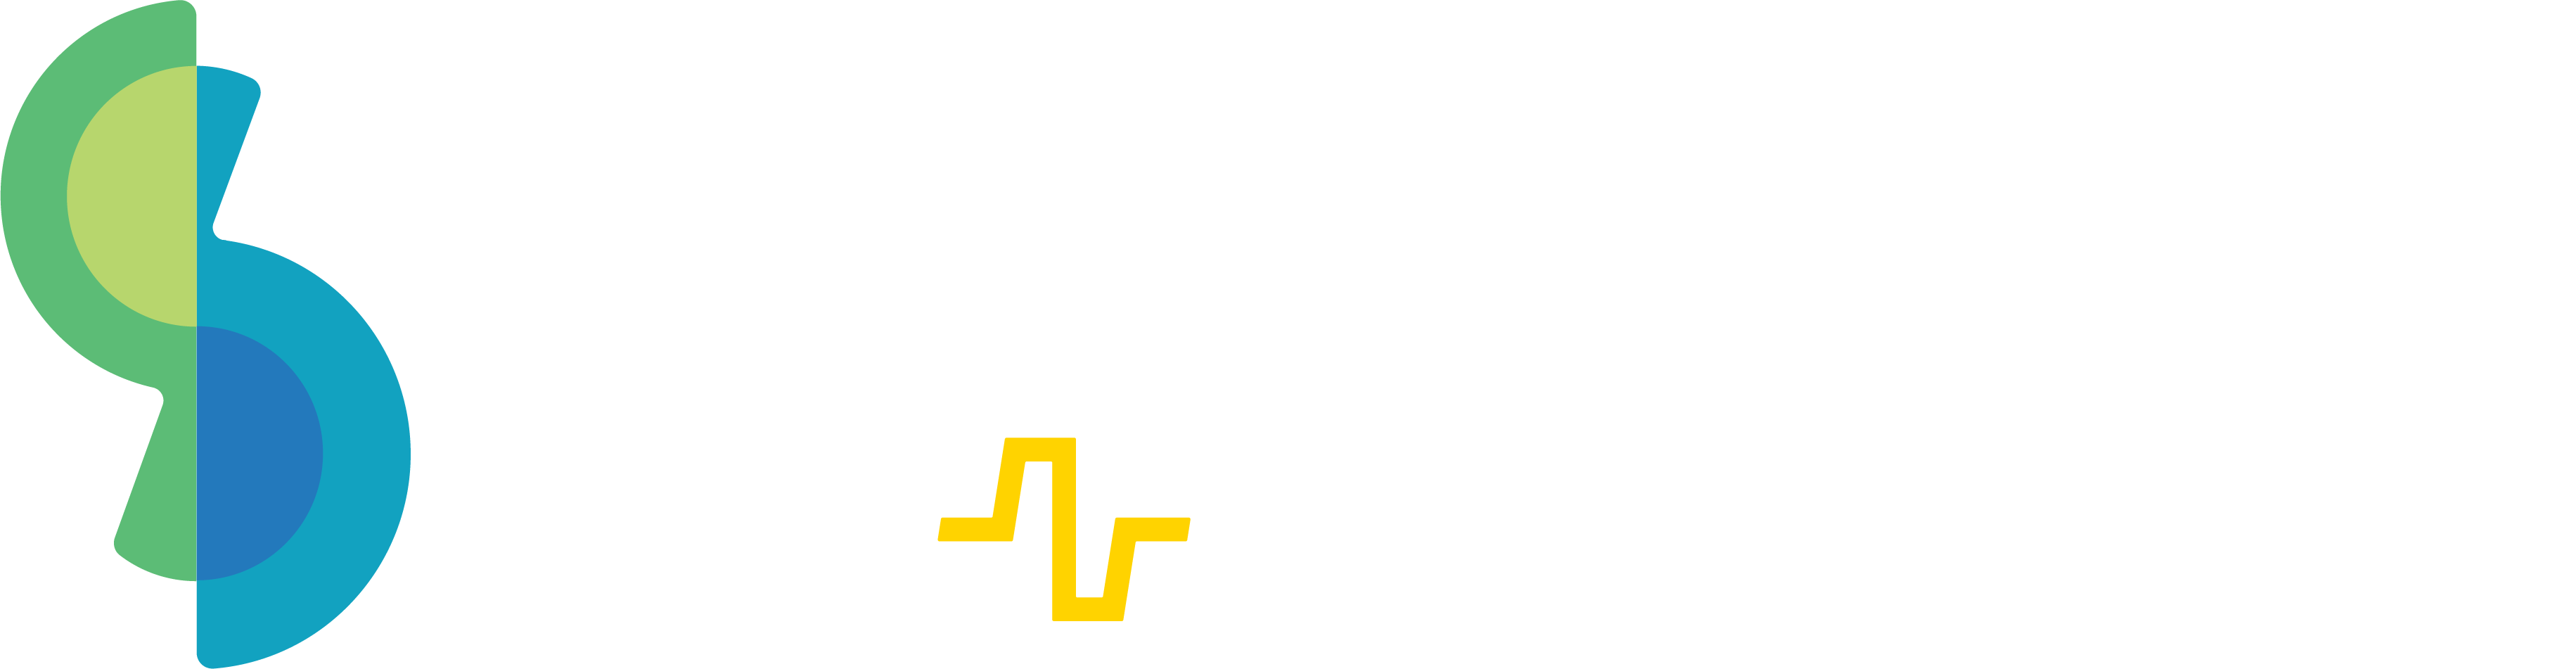 skriware logo